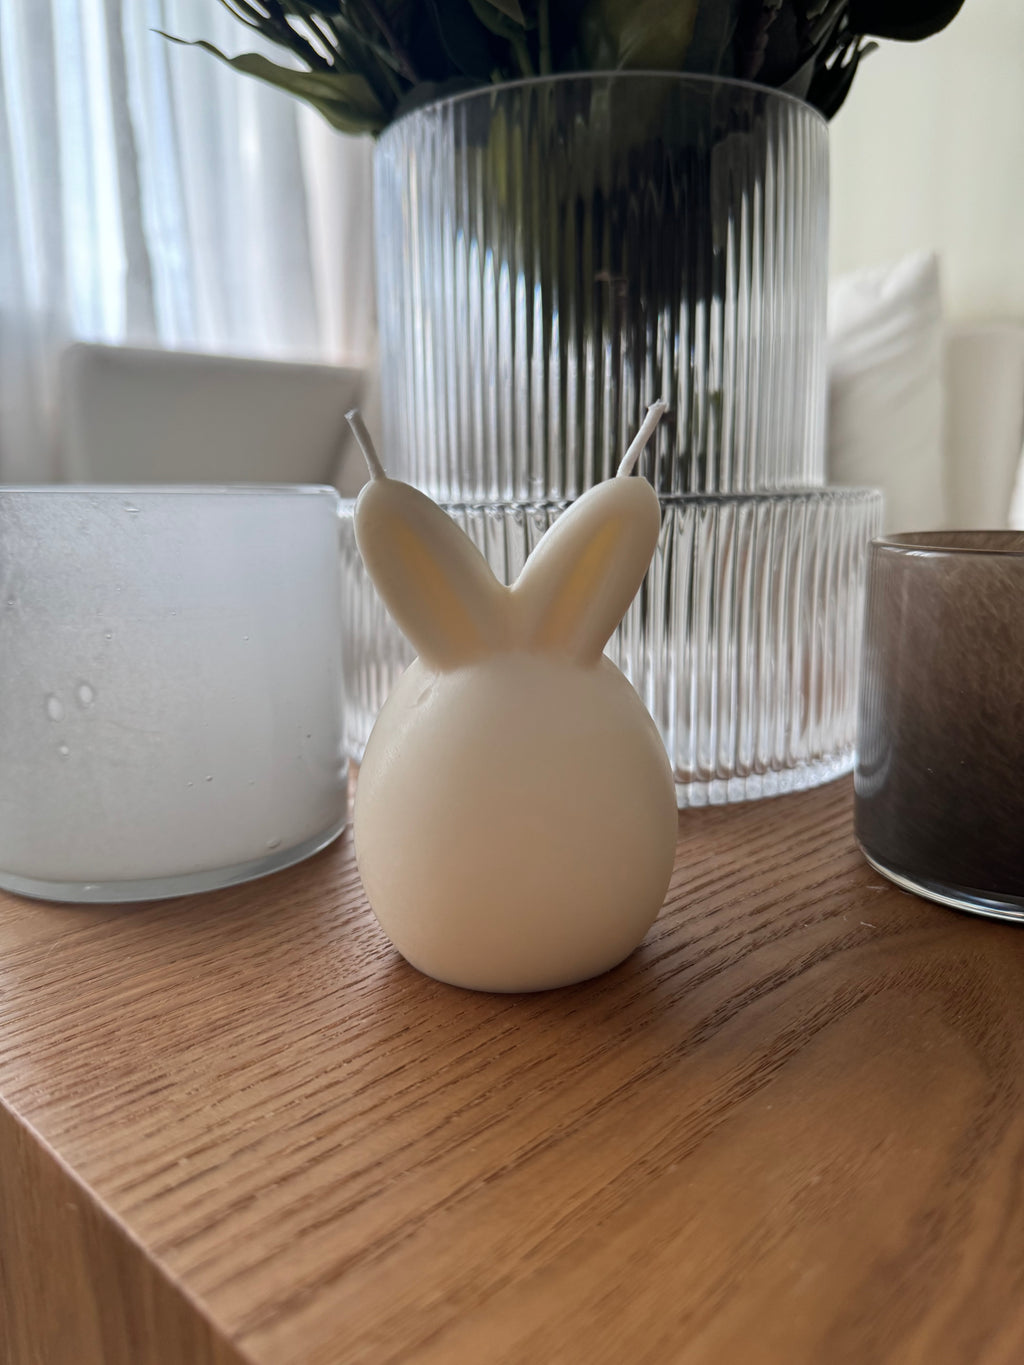 Mr. Easter bunny - Felicias.no